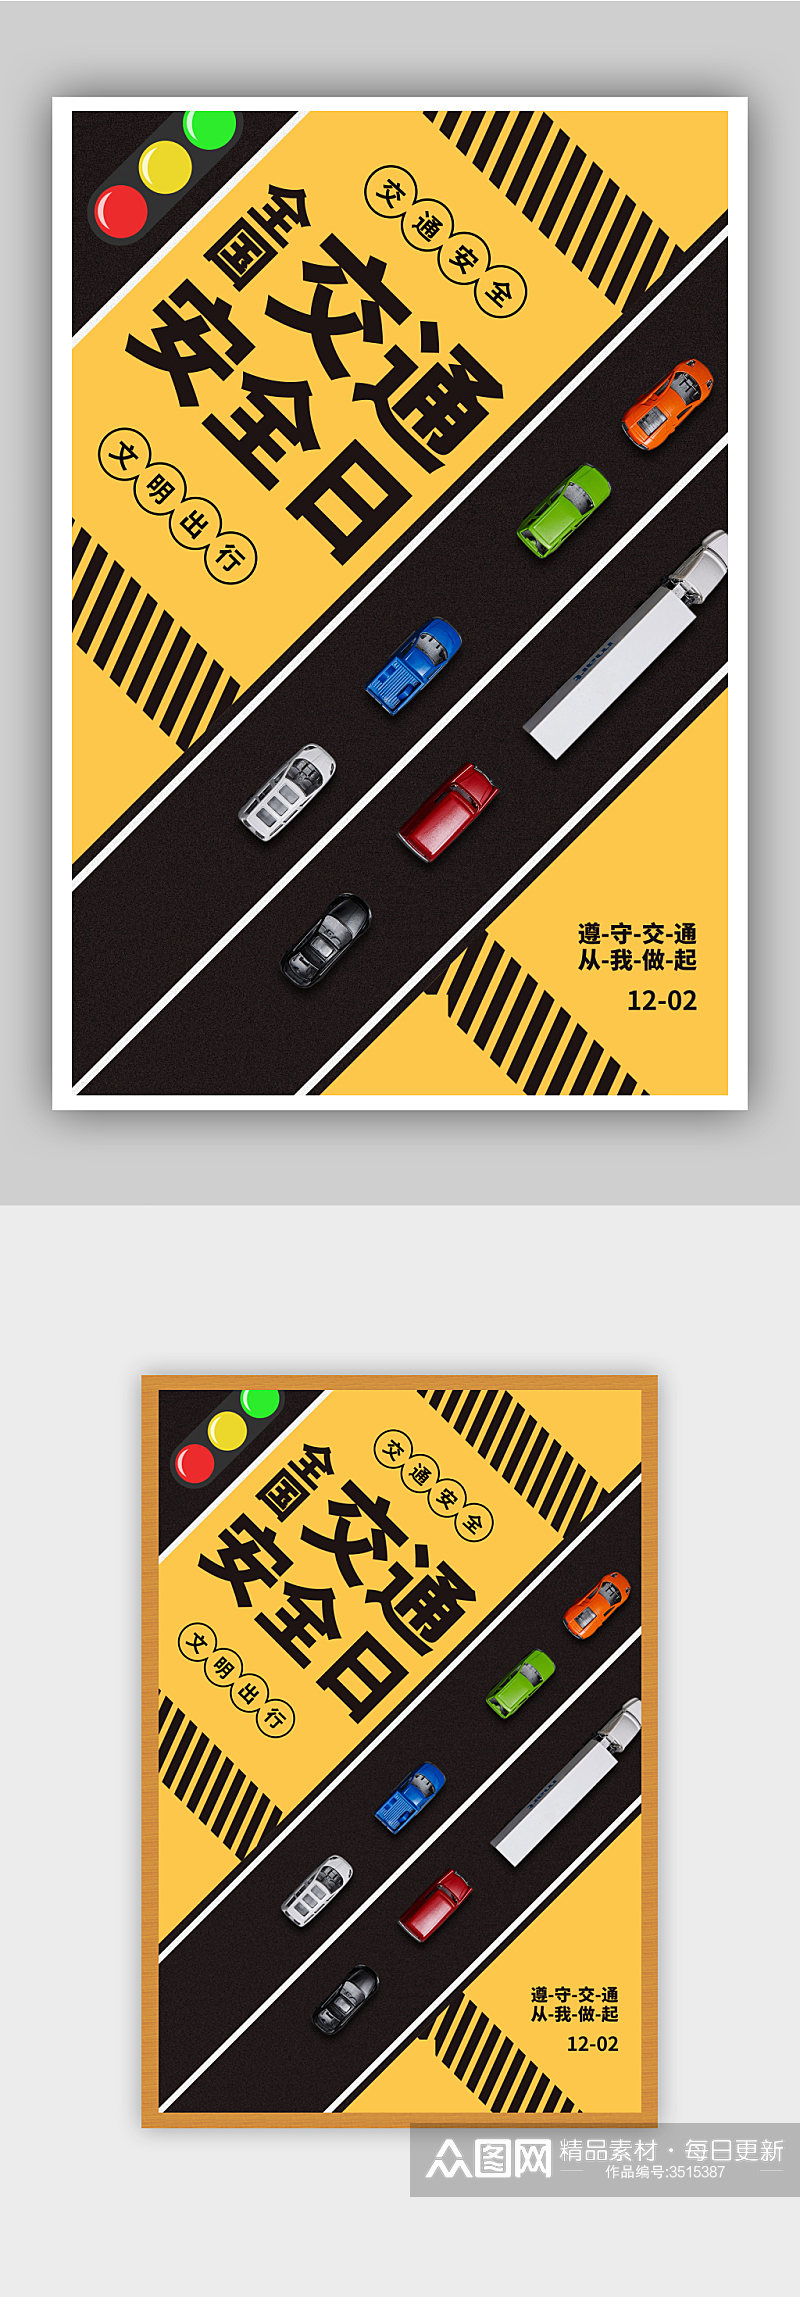 黄黑撞色交通安全日宣传海报素材